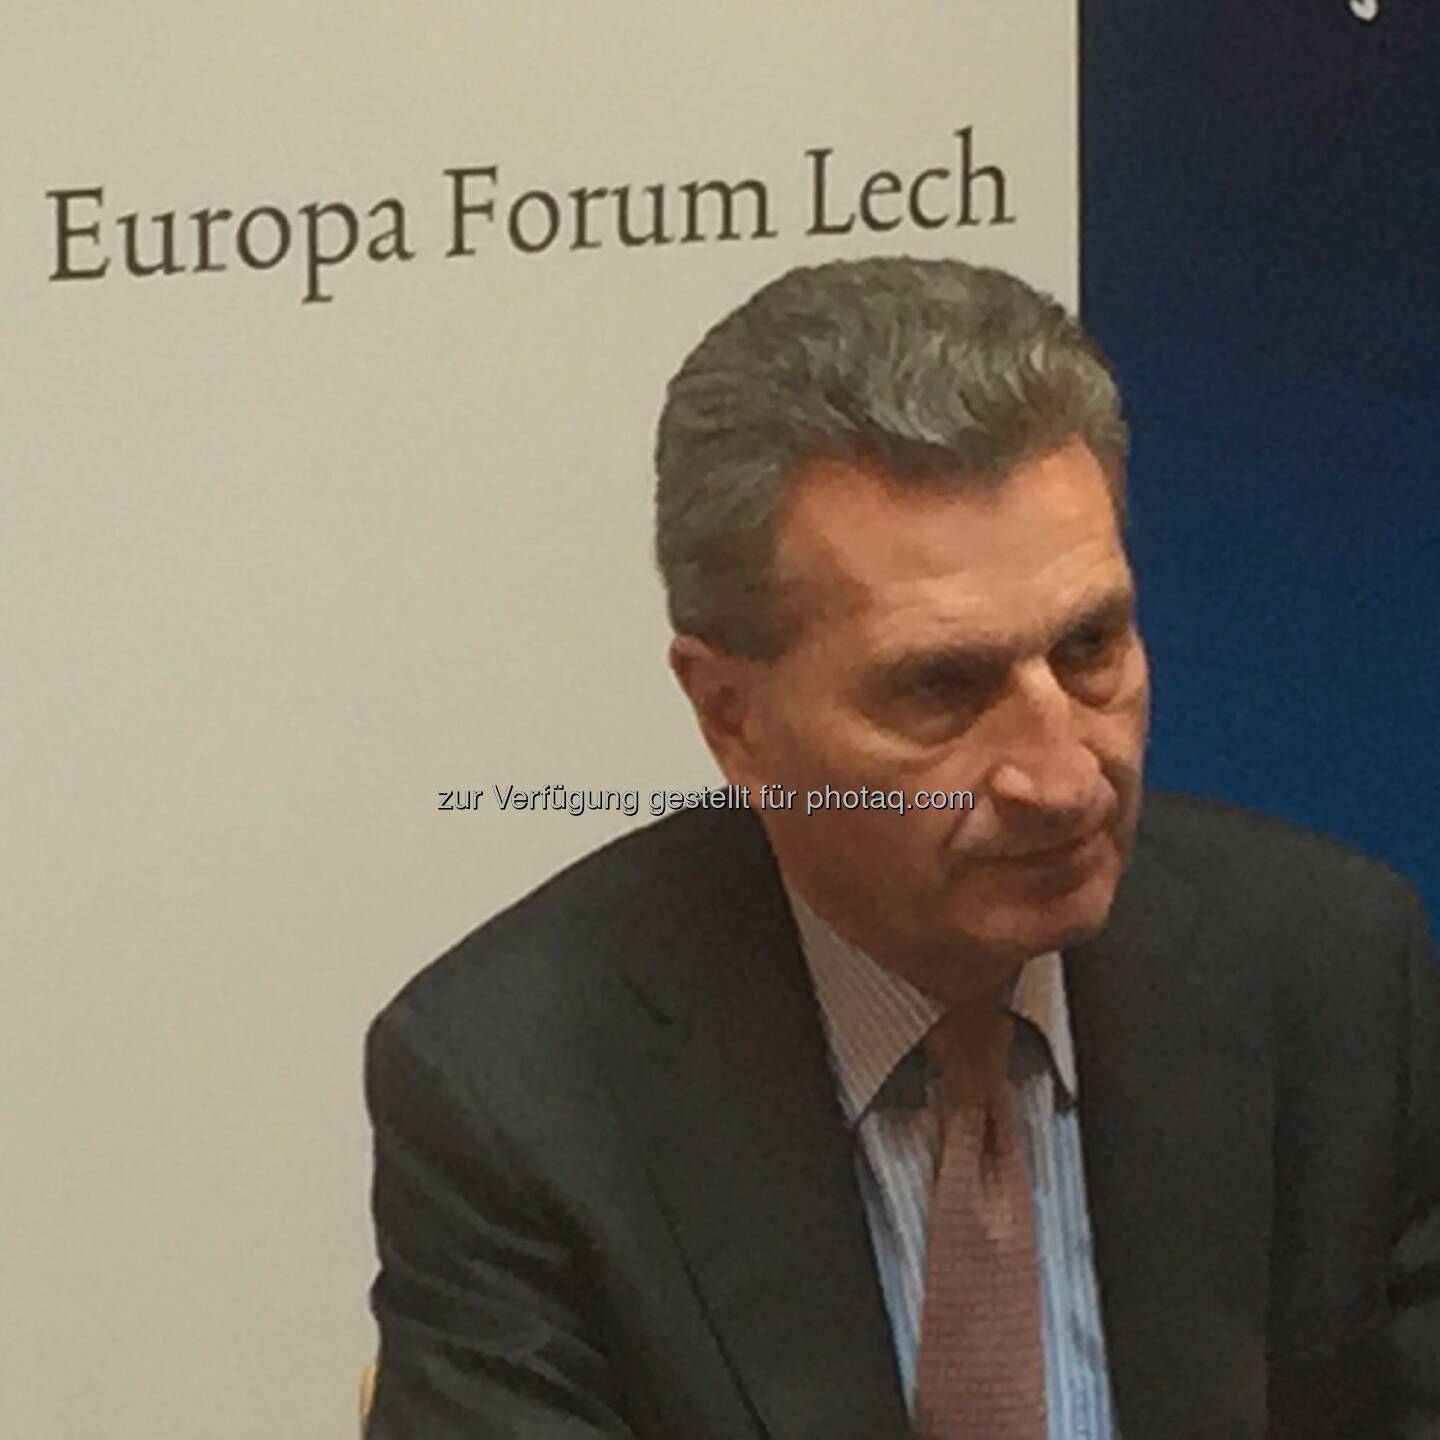 Günther Oettinger (EU-Kommissar) : Wirtschaft und Gesellschaft im digitalen Wandel : Europaforum Lech 2016 mit EU-Kommissar Günther Oettinger ging heute zu Ende : Fotocredit: Europäische Kommission 2016/Miko